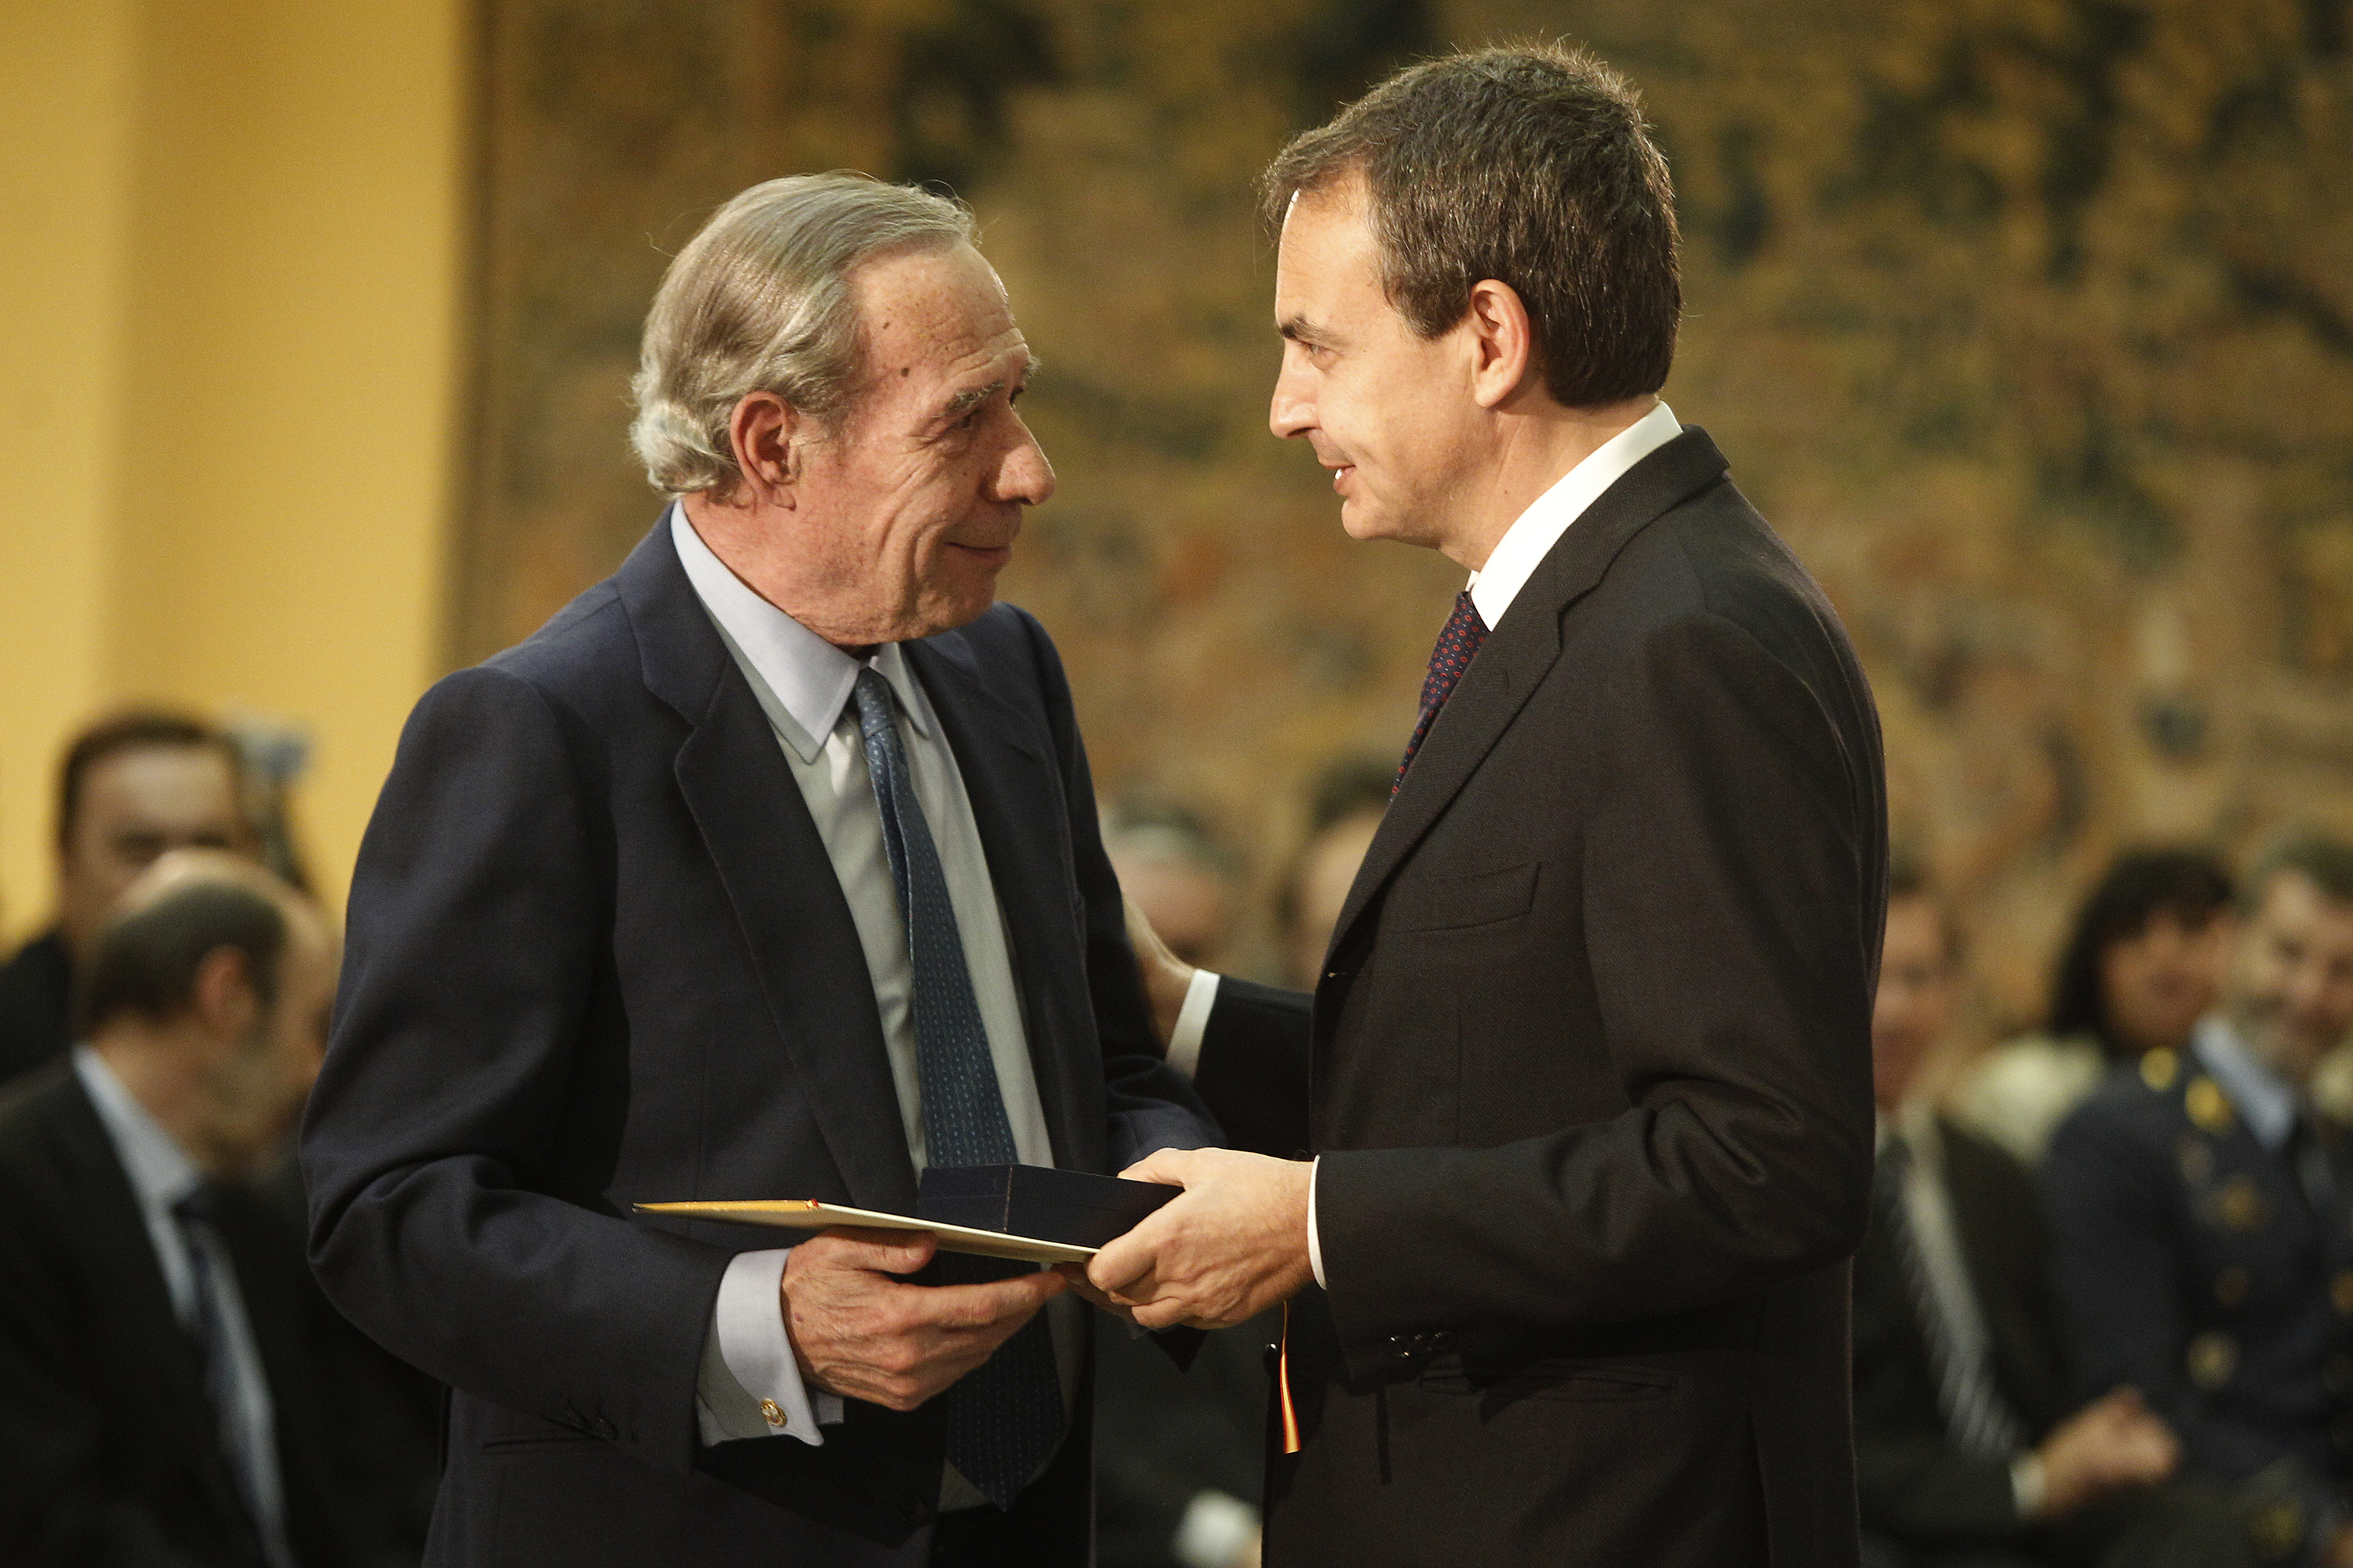 Lana recibi de Zapatero en 2011 la medalla de la Orden del Merito Constitucional